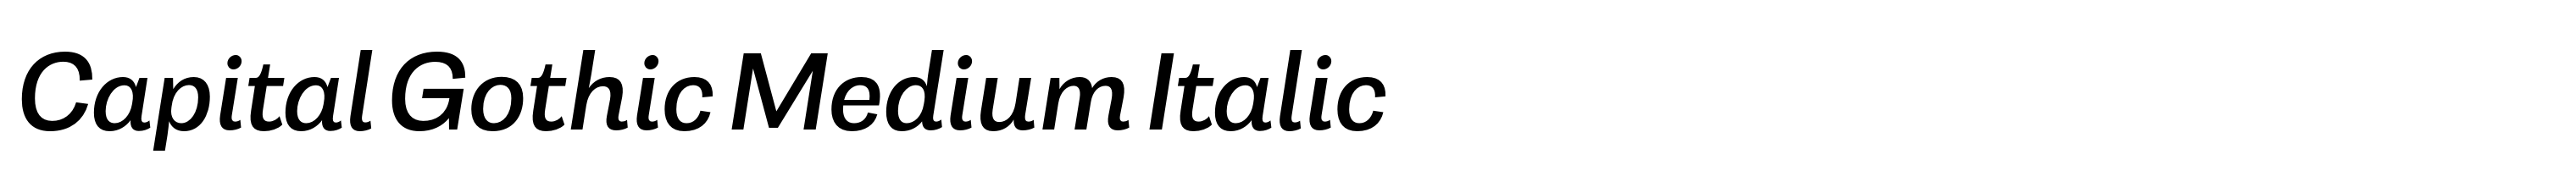 Capital Gothic Medium Italic